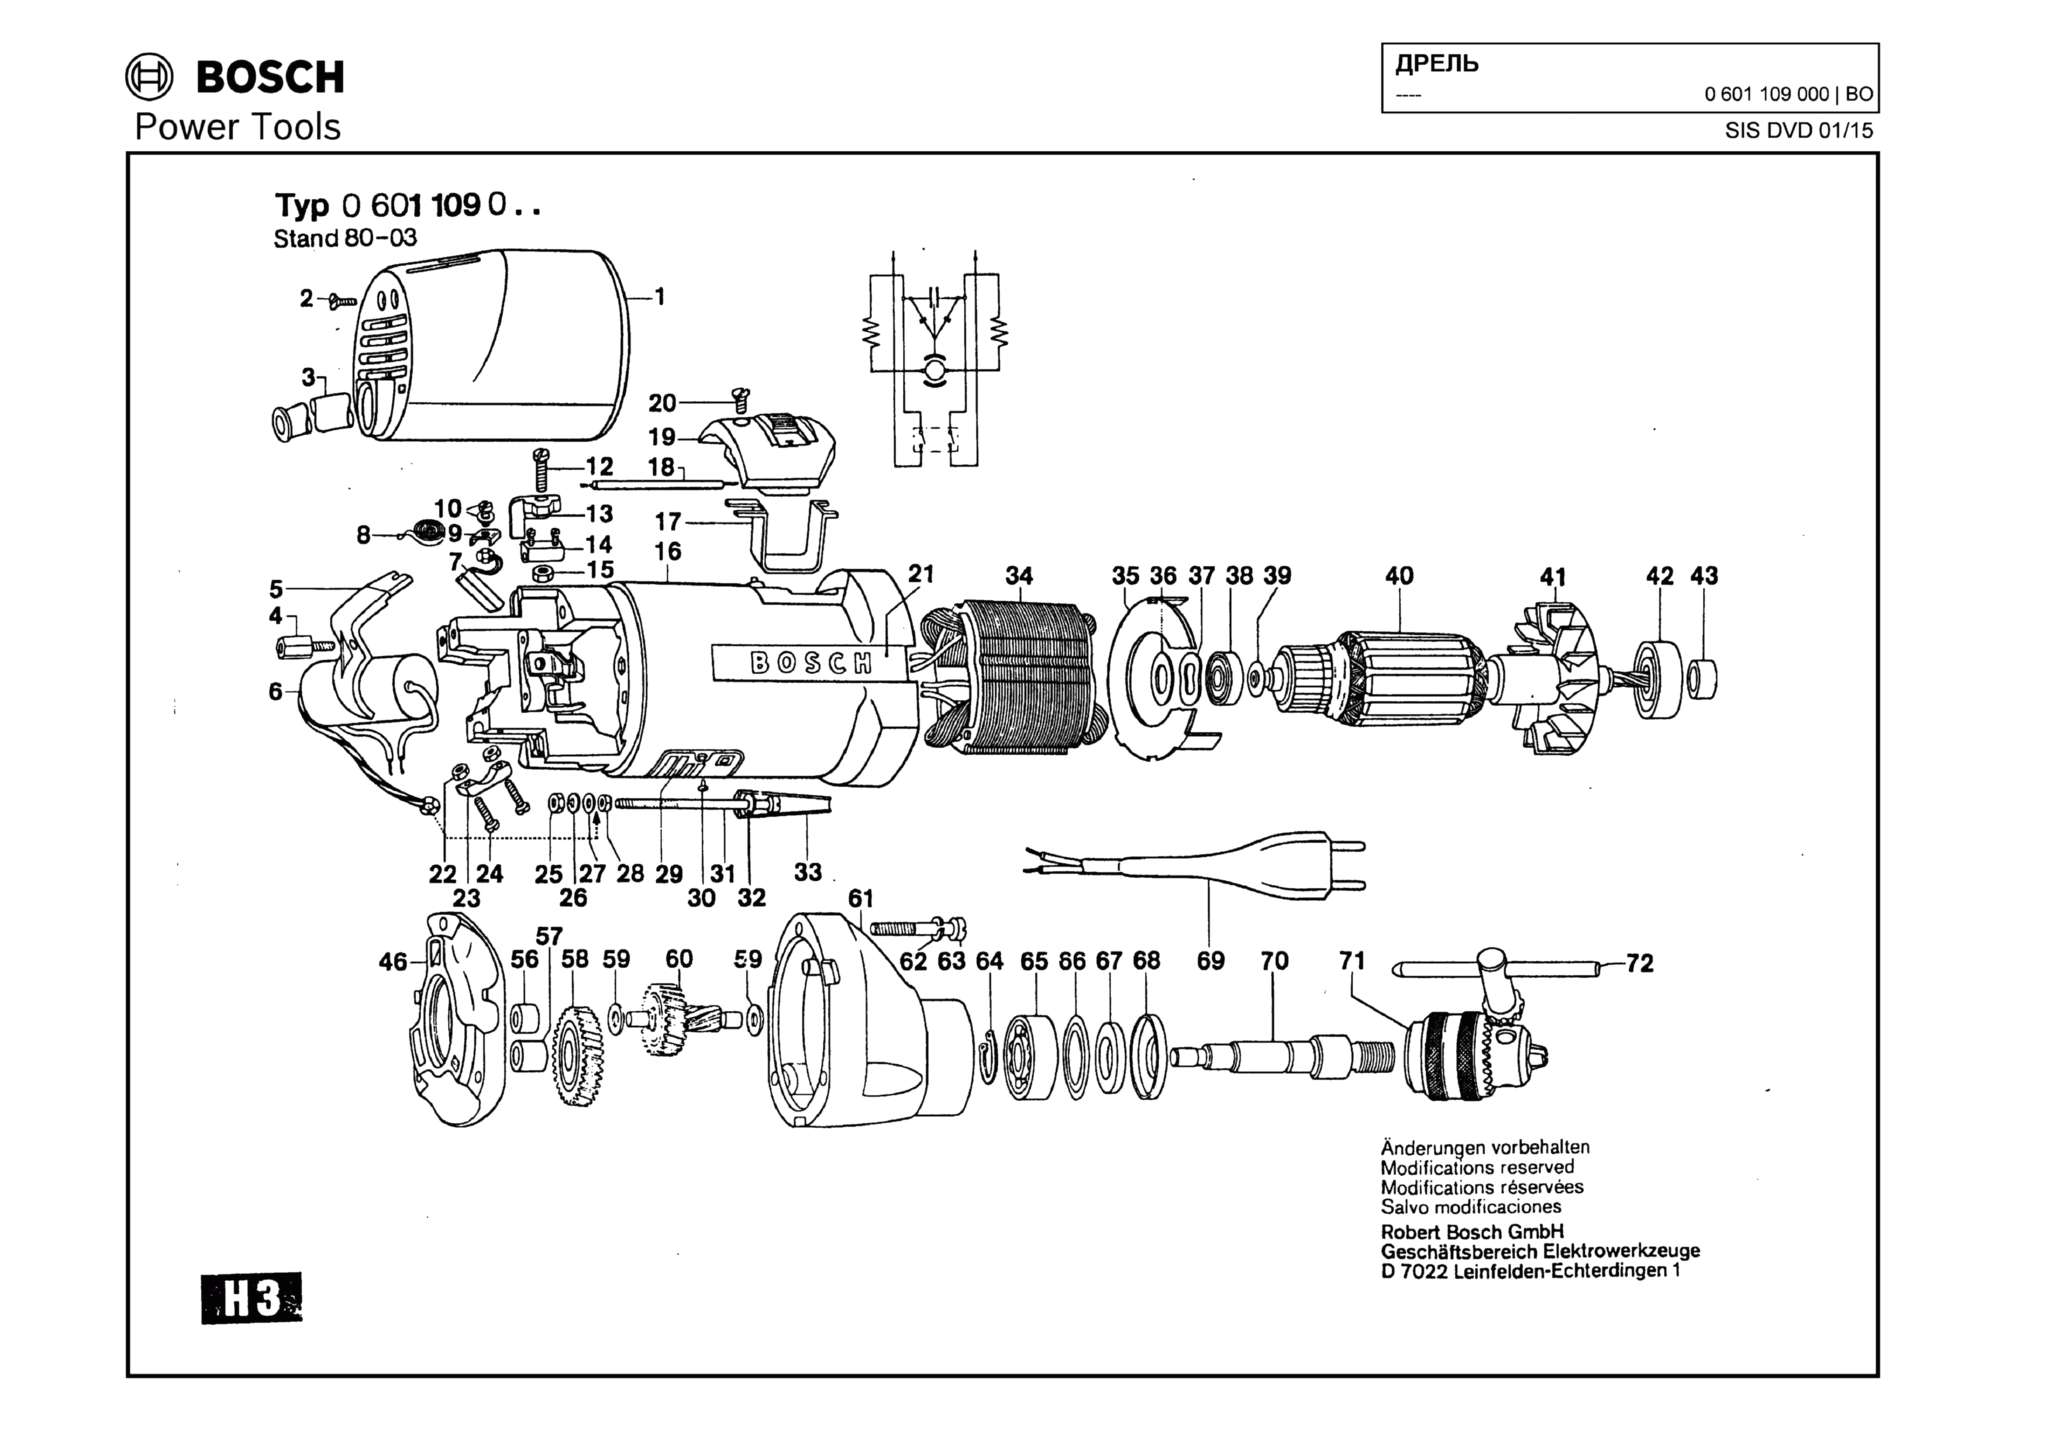 Запчасти, схема и деталировка Bosch (ТИП 0601109000)